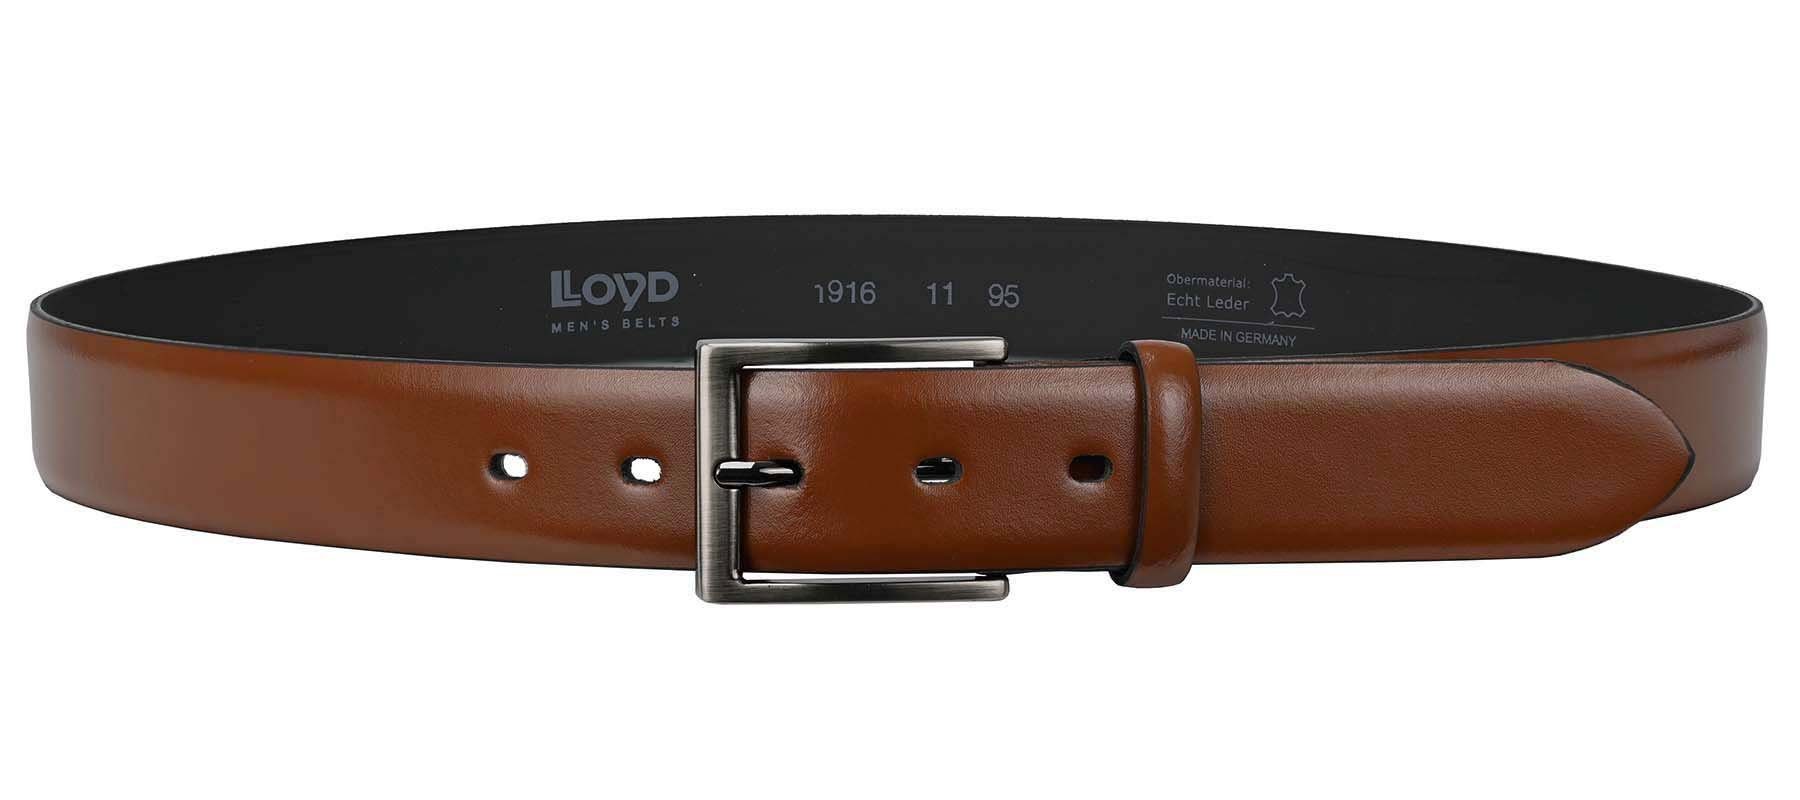 Dorn-Schließe LLOYD Ledergürtel Belts Men’s 35 LLOYD-Herren-Ledergürtel mm cognac